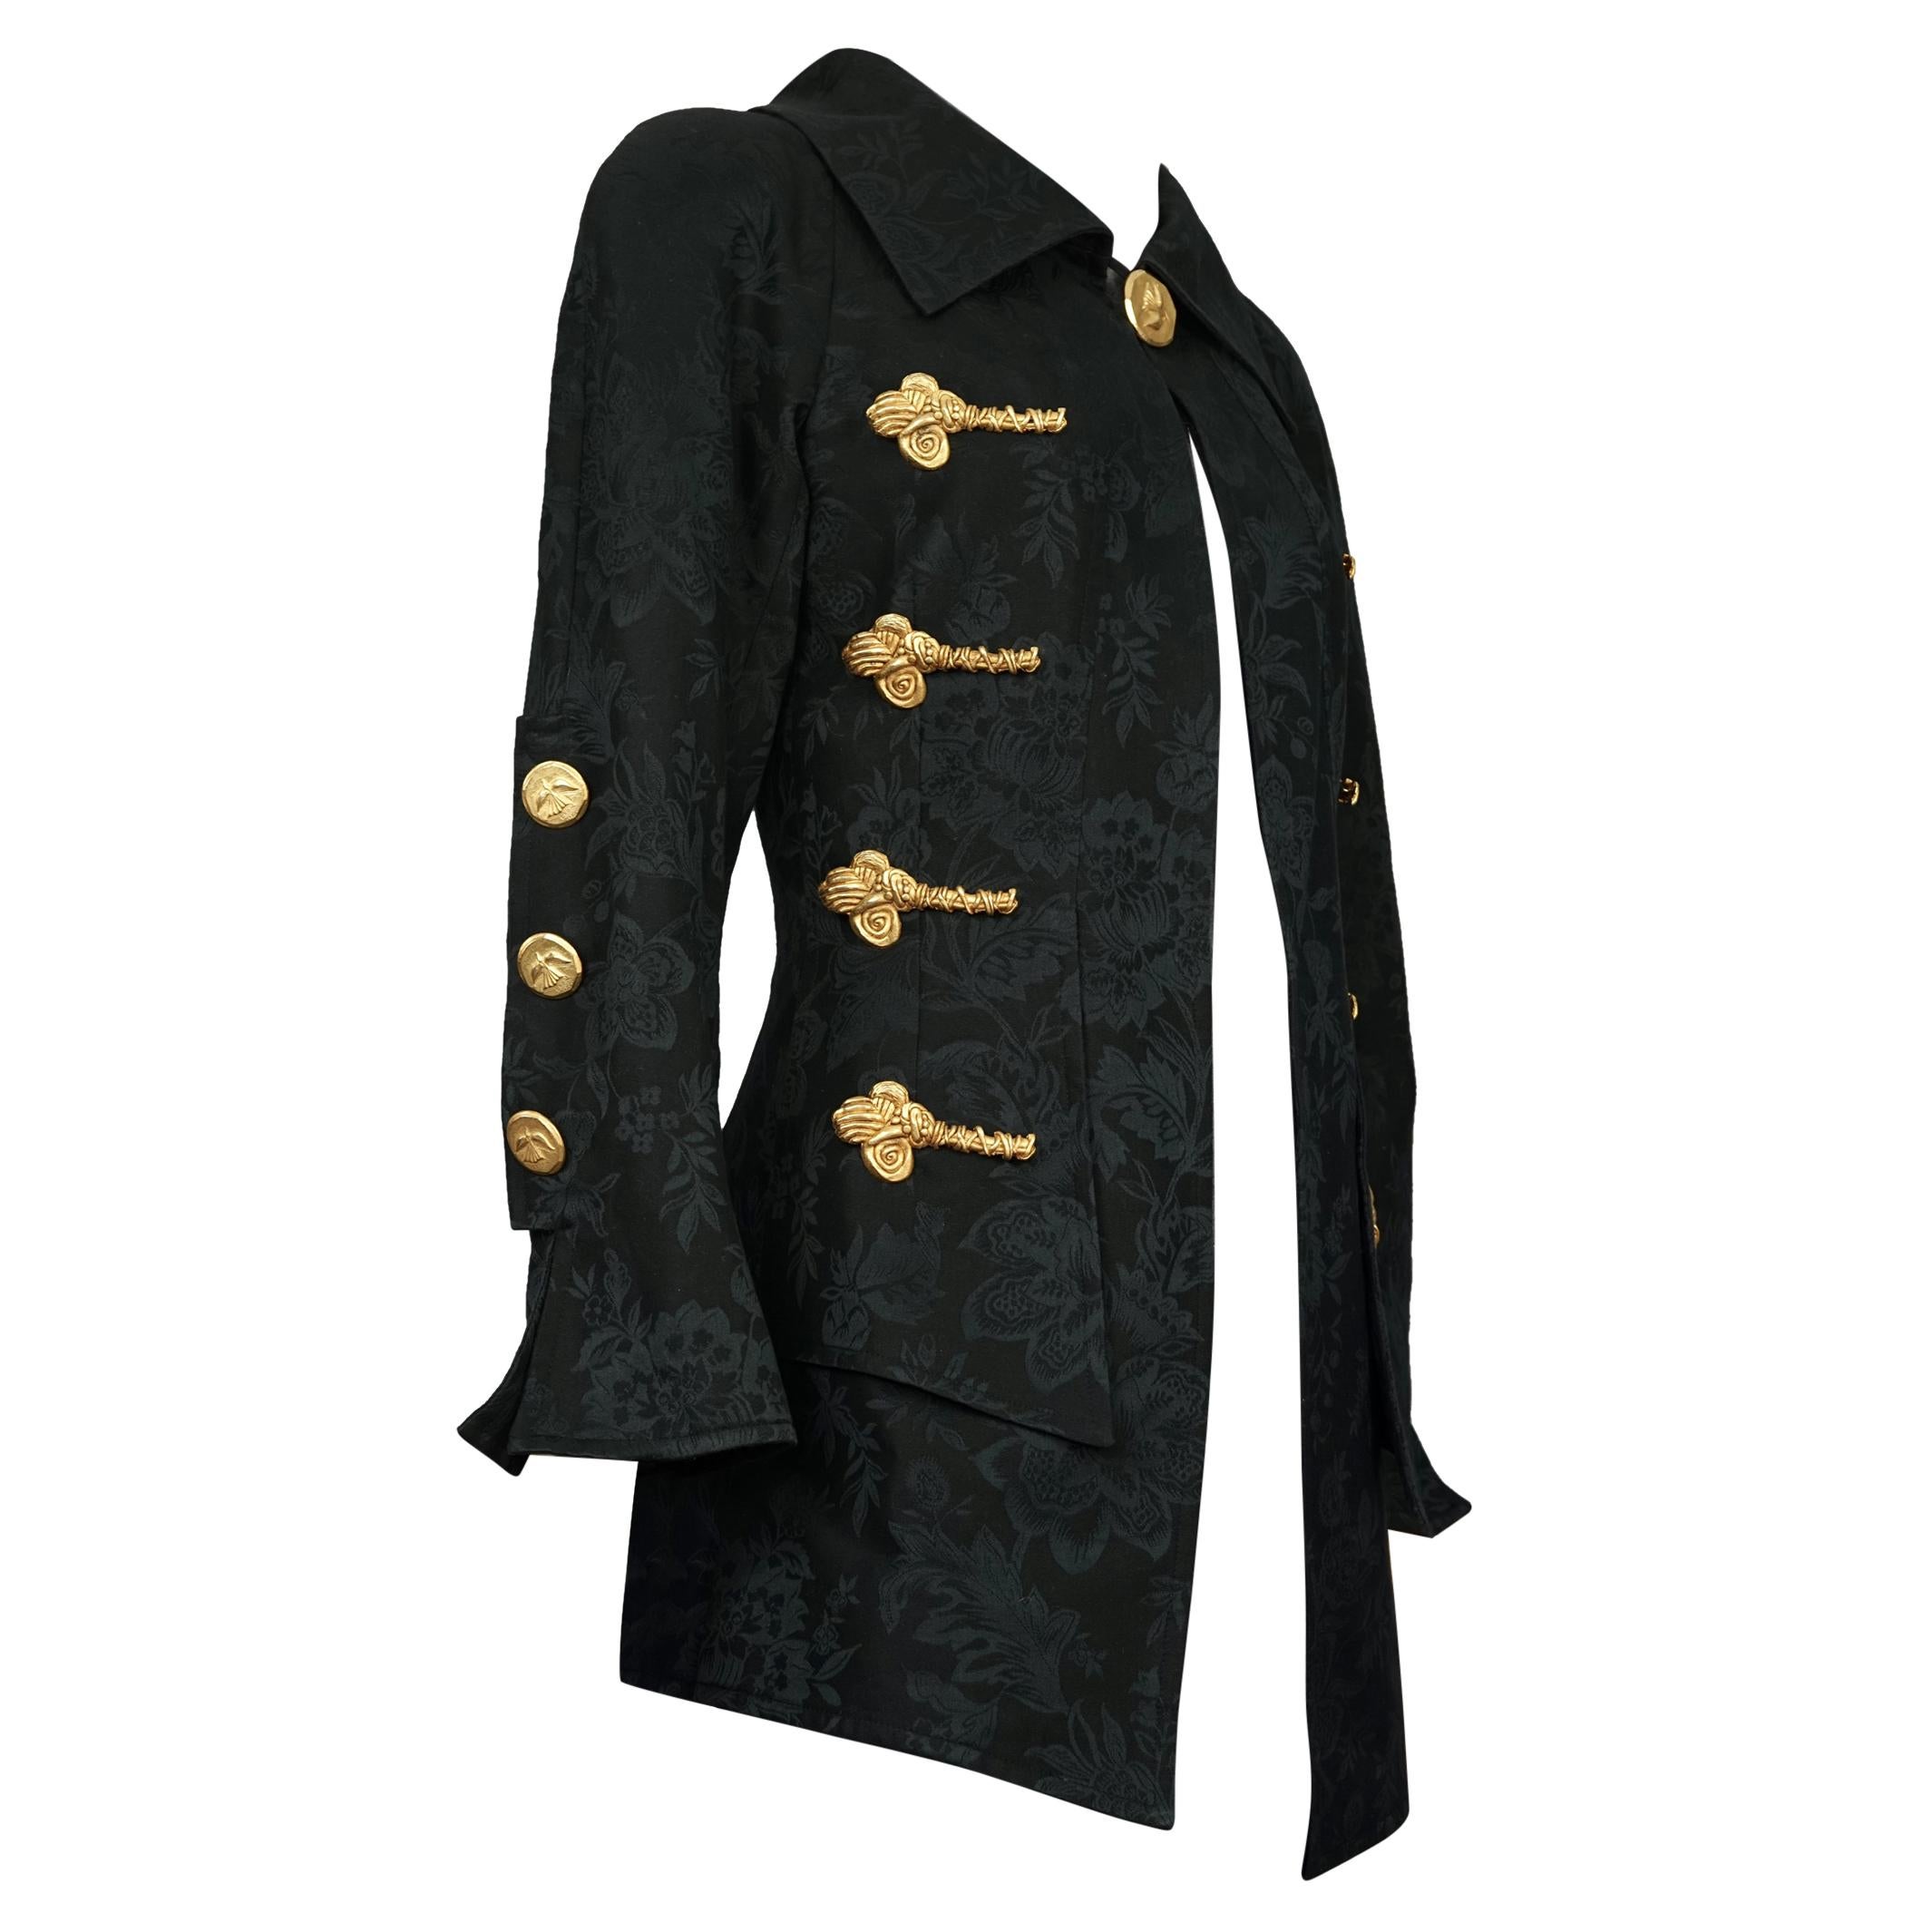 Vintage Rare CHRISTIAN LACROIX Sculptured Metal Buttons Jacquard Blazer Jacket For Sale